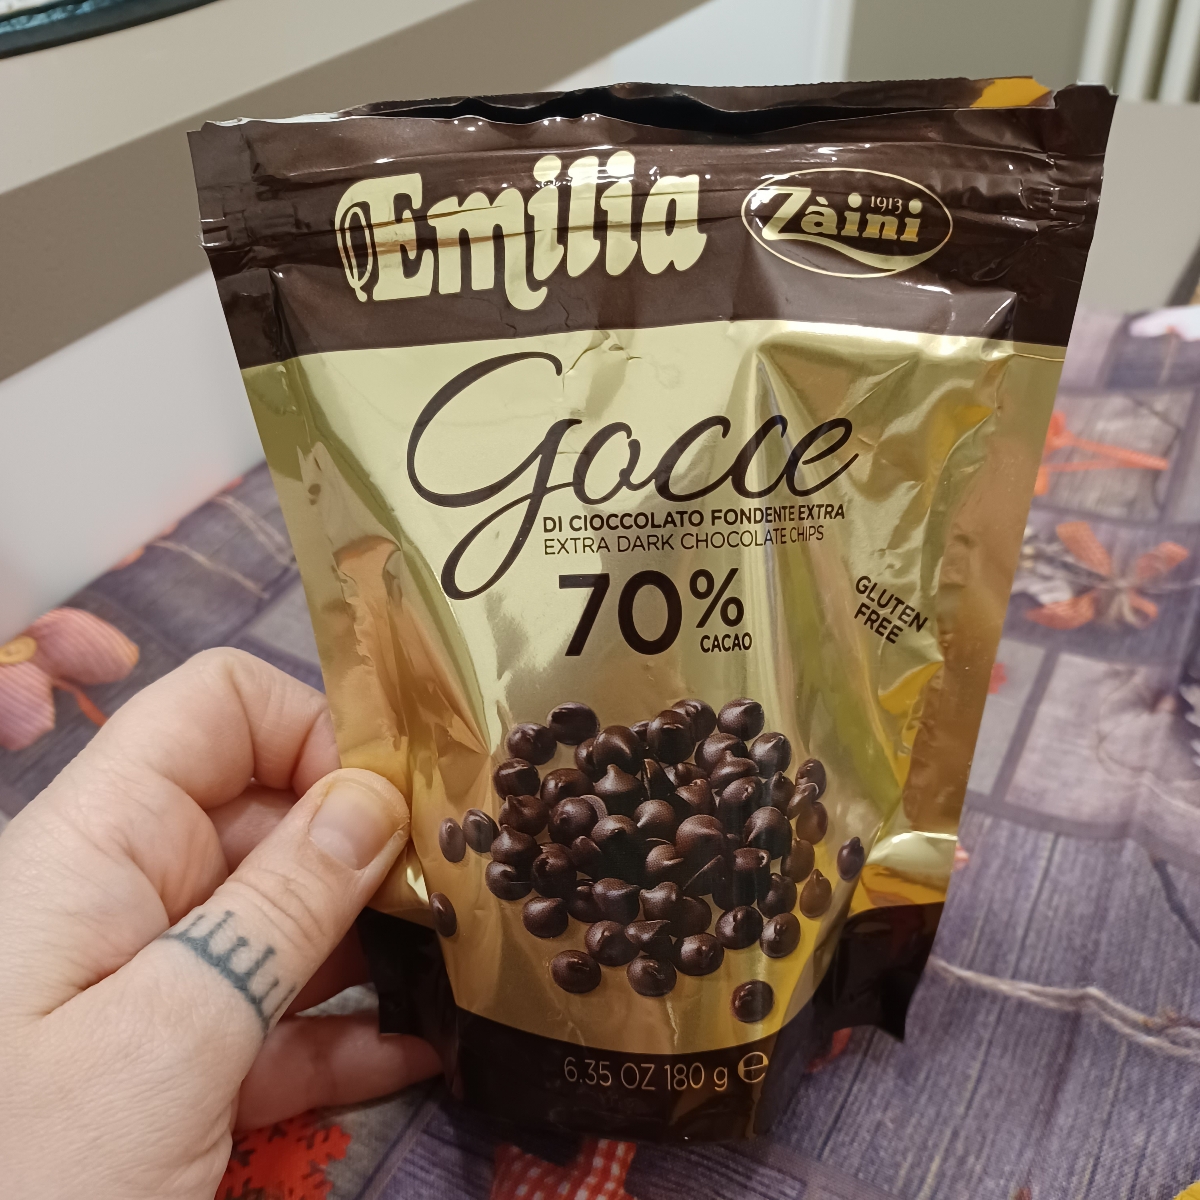 Emilia Zaini Gocce Di Cioccolato Extra Fondente 70% Reviews